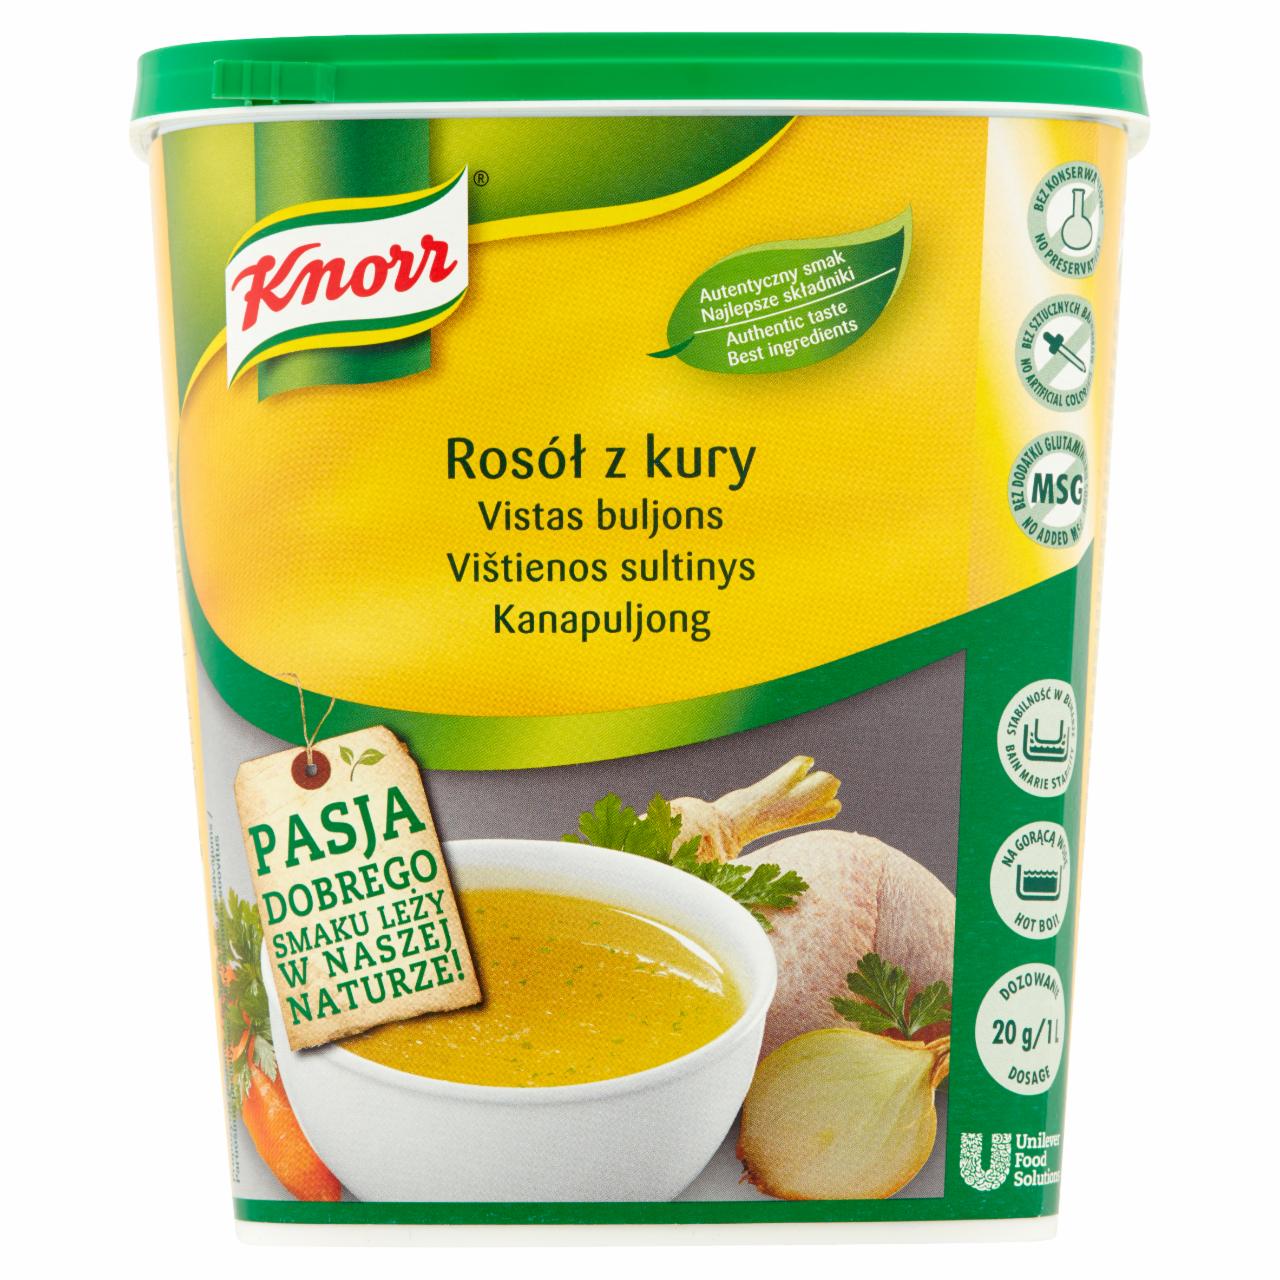 Zdjęcia - Knorr Rosół z kury 0,9 kg